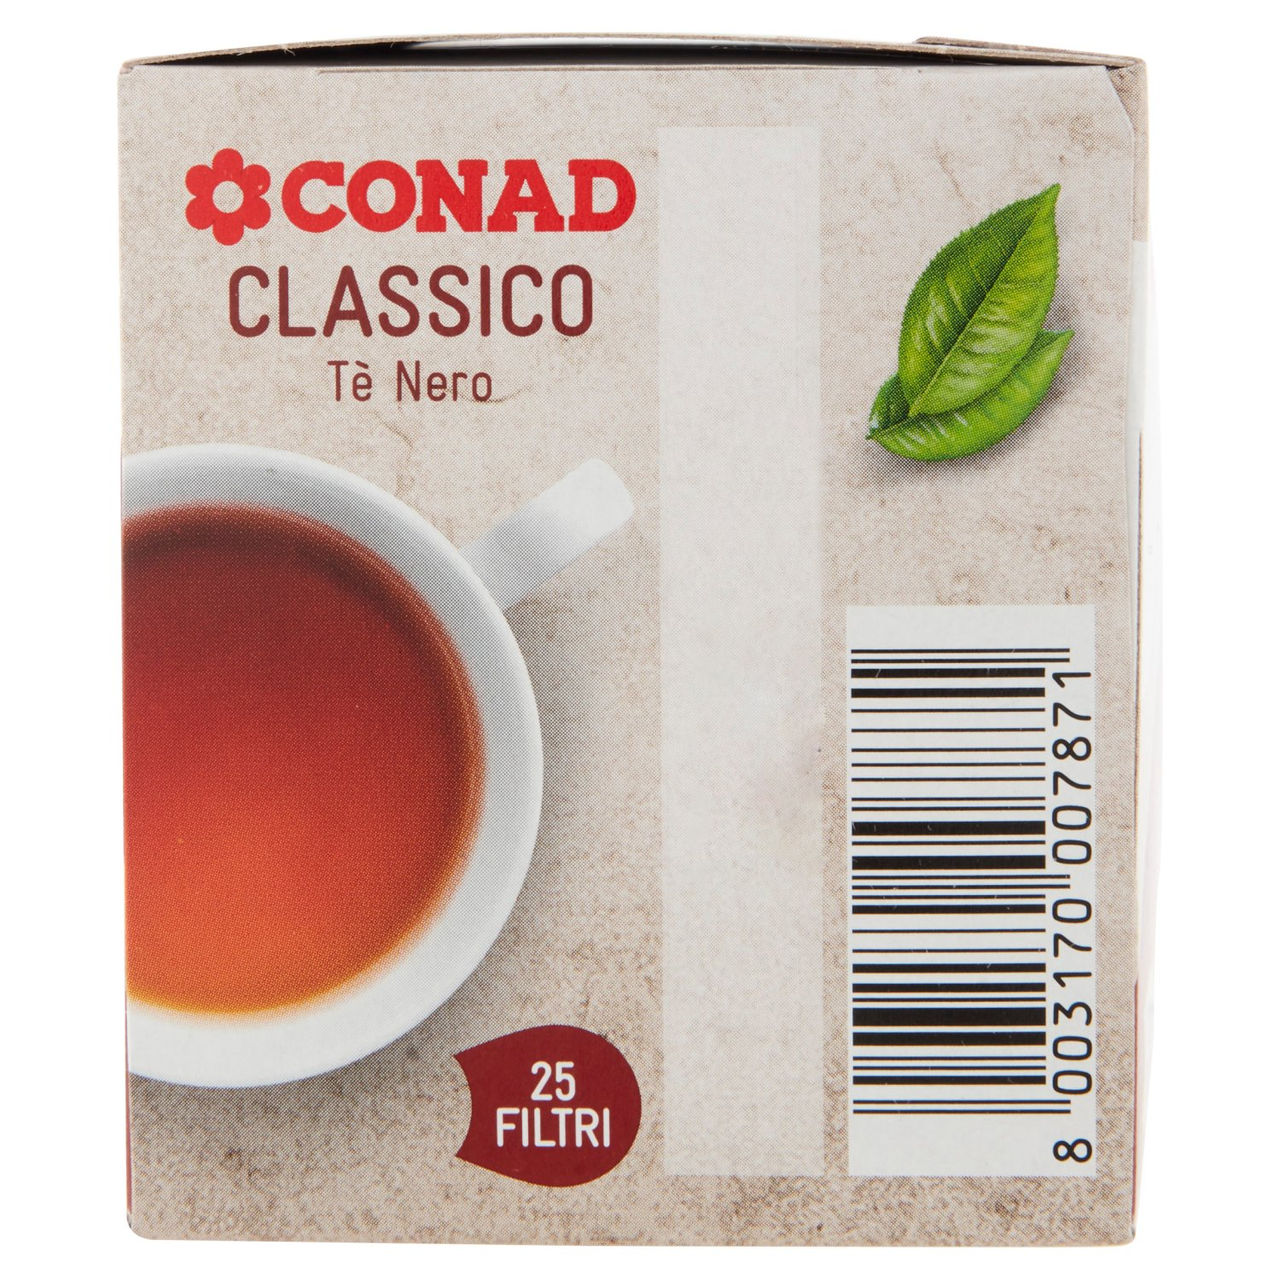 Classico Tè Nero 25 filtri da 1,7 g Conad online